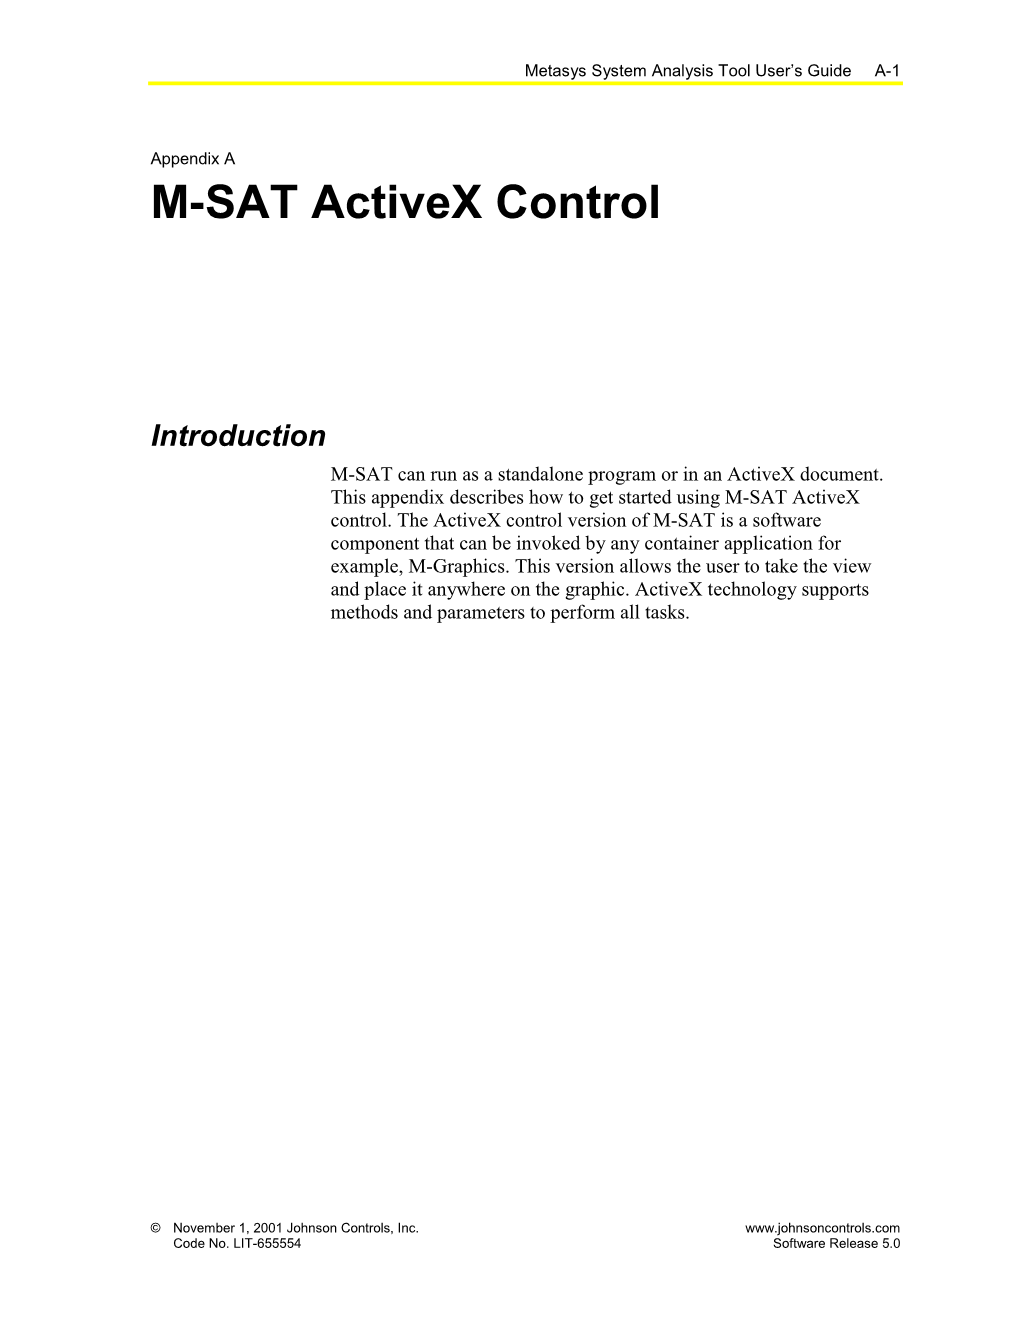 M-SAT Activex Control